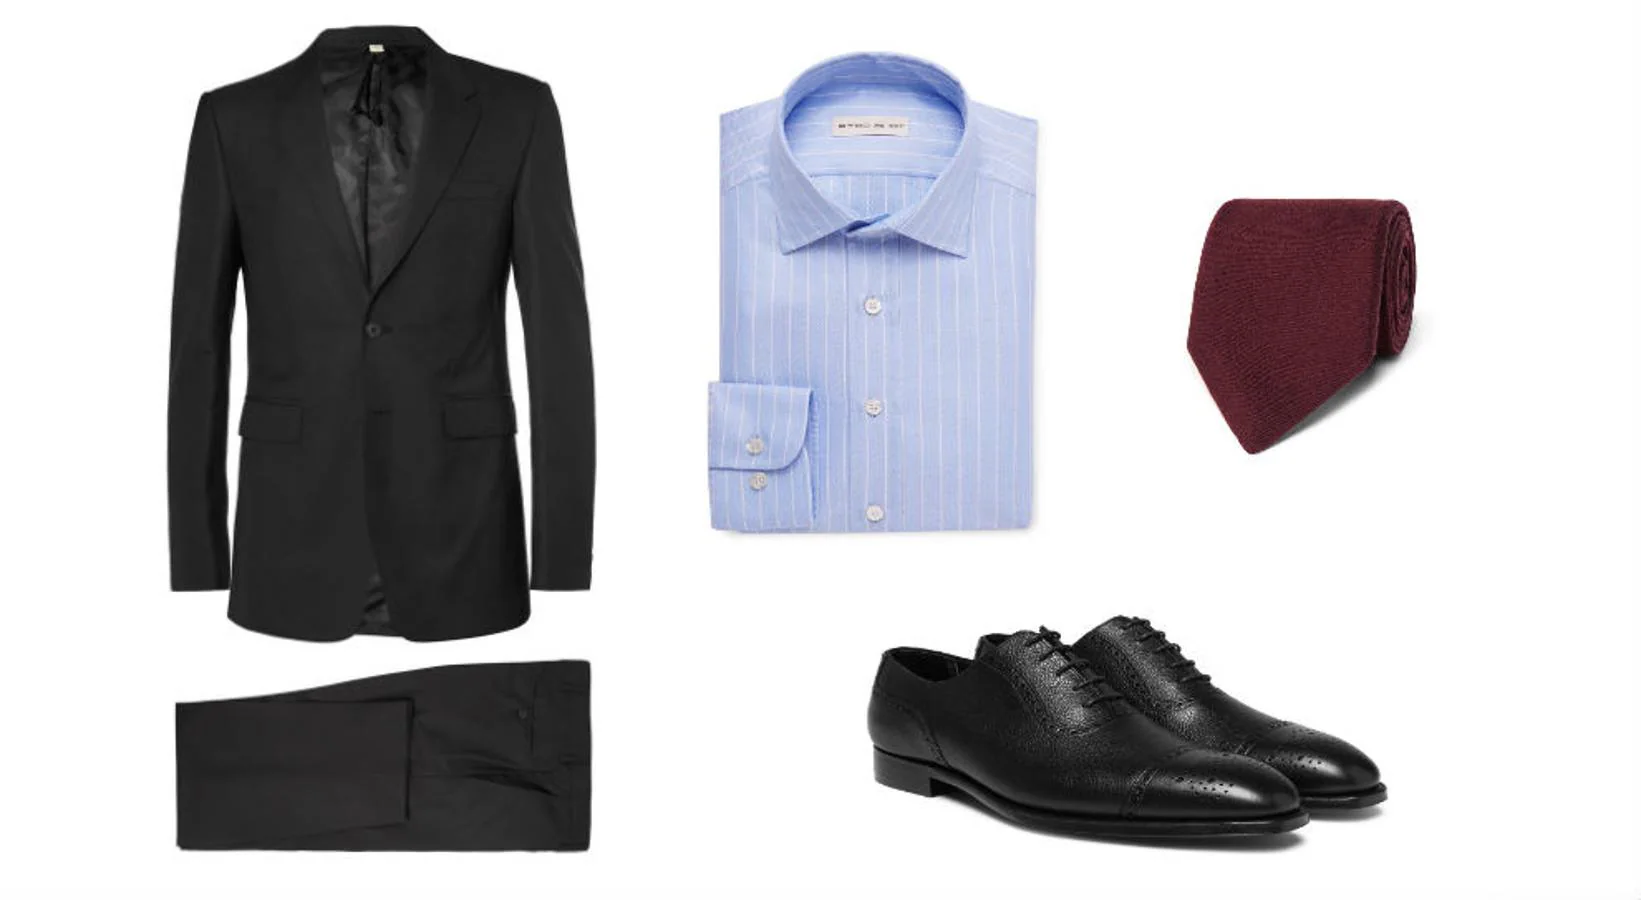 Look inspirado en 'The Good wife'. Traje negro de Burberry (Precio: 995 euros), camisa de Etro (Precio: 210 euros), corbata de Charvet (Precio: 195 euros) y zapatos de George Cleverley (Precio: 625 euros).